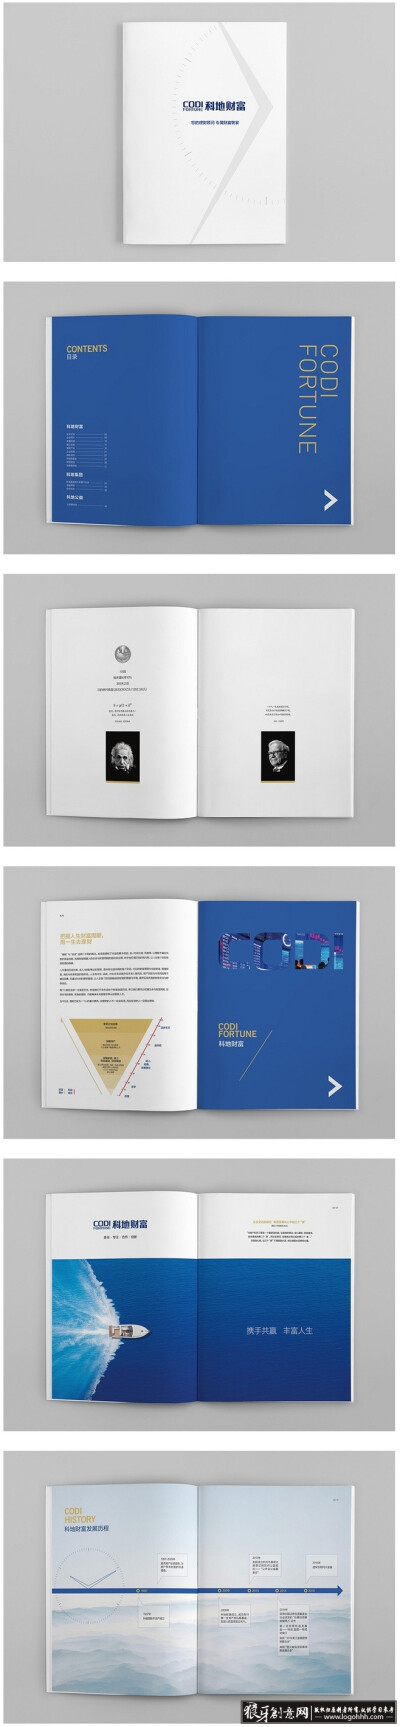 创意画册 科技画册 企业宣传册 简约画册封面设计 创意画册 科技画册 商务画册 企业宣传册设计